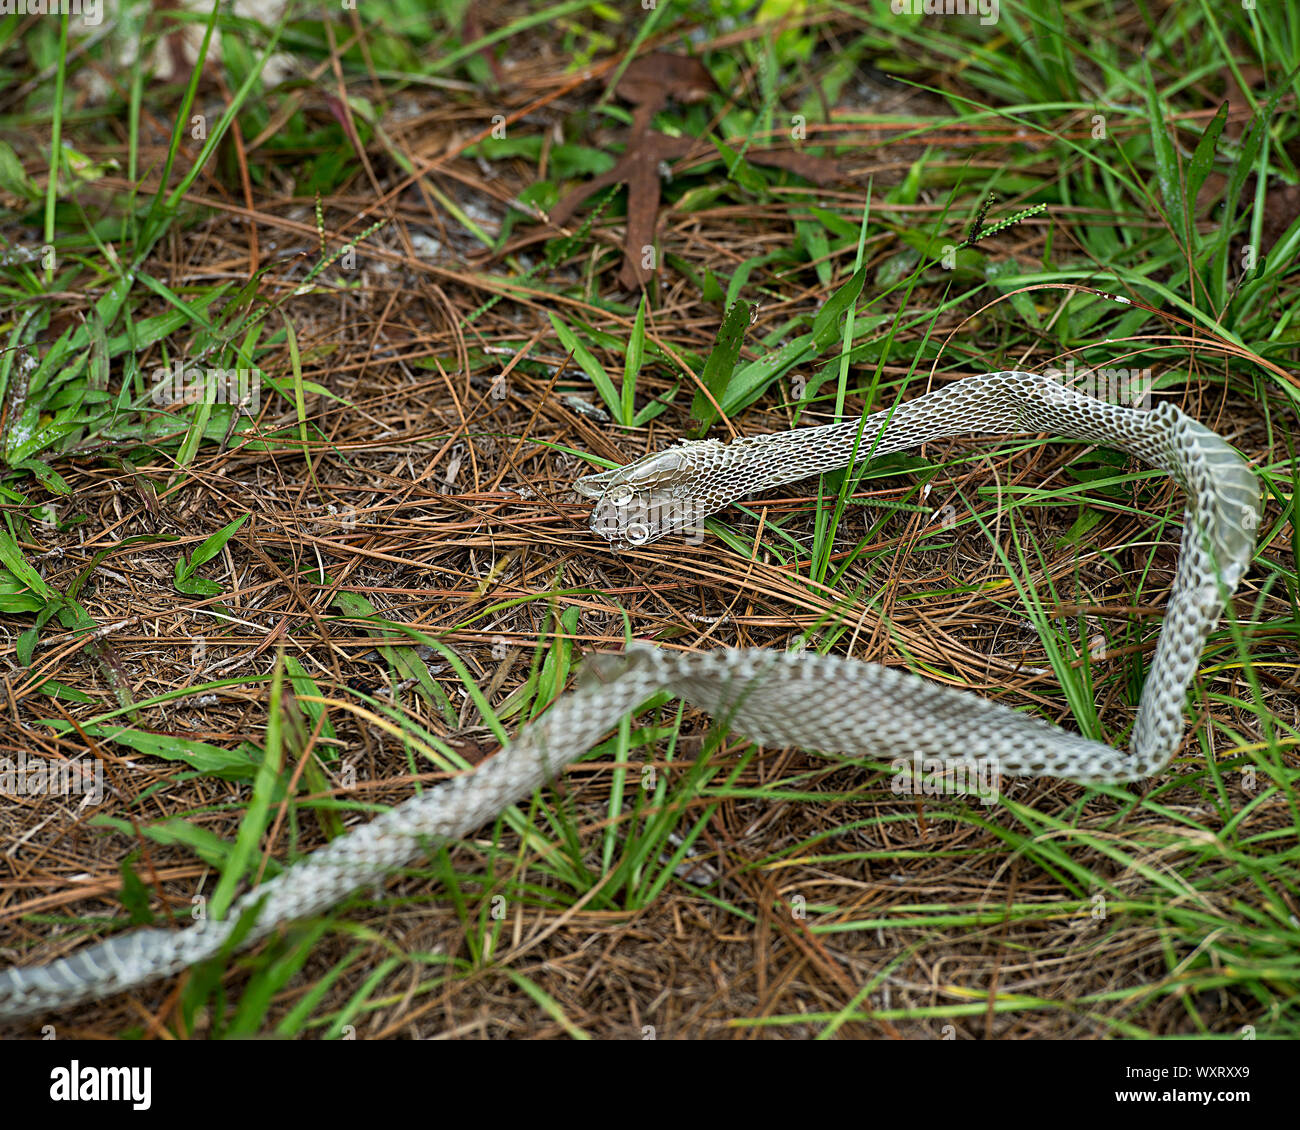 Schlange Shedding Haut auf dem Boden mit grünem Gras in seiner Umgebung. Stockfoto